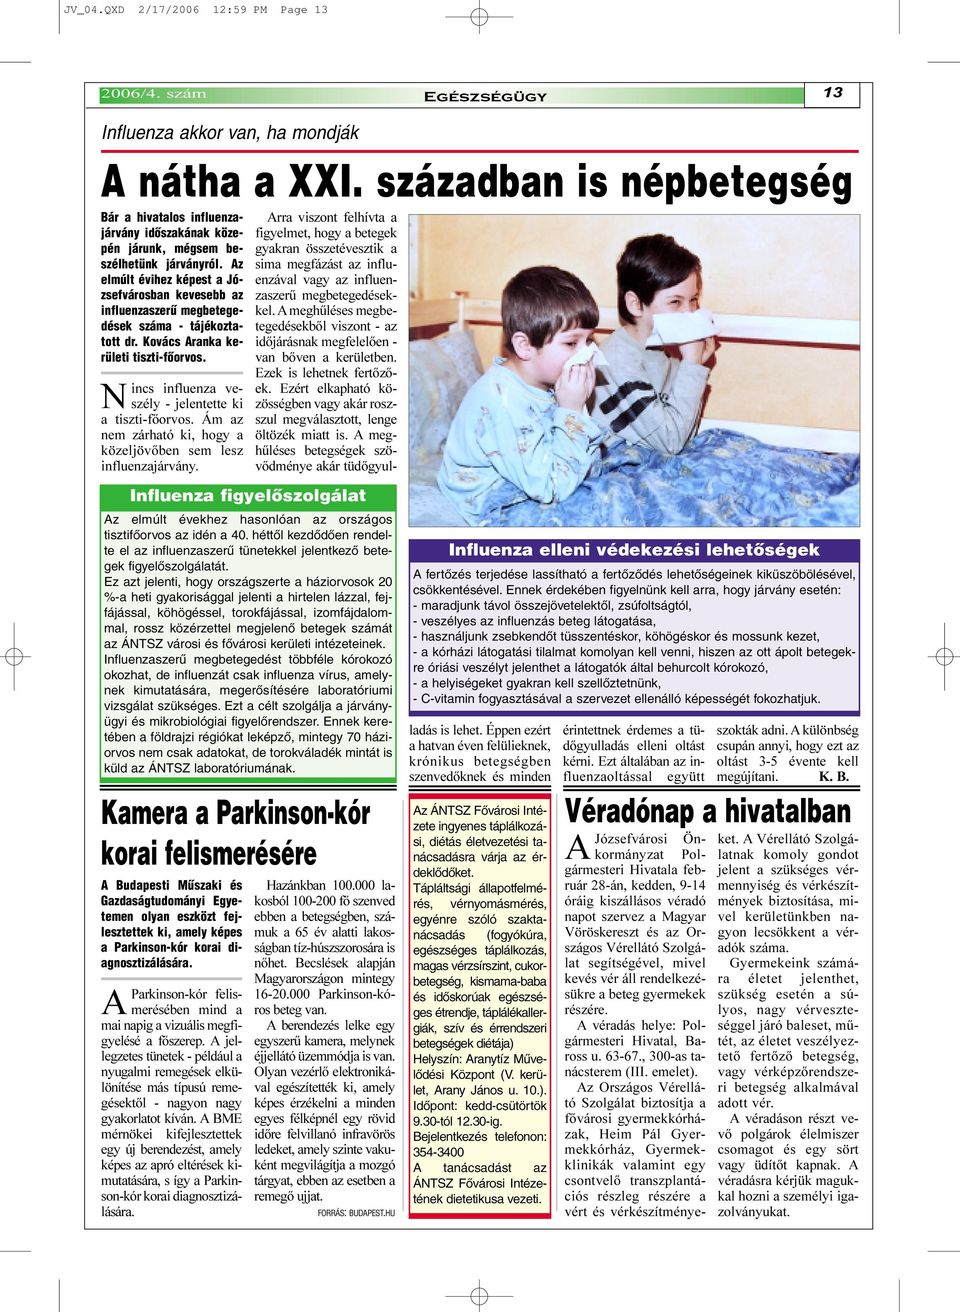 Az elmúlt évihez képest a Józsefvárosban kevesebb az influenzaszerû megbetegedések száma - tájékoztatott dr. Kovács Aranka kerületi tiszti-fõorvos.